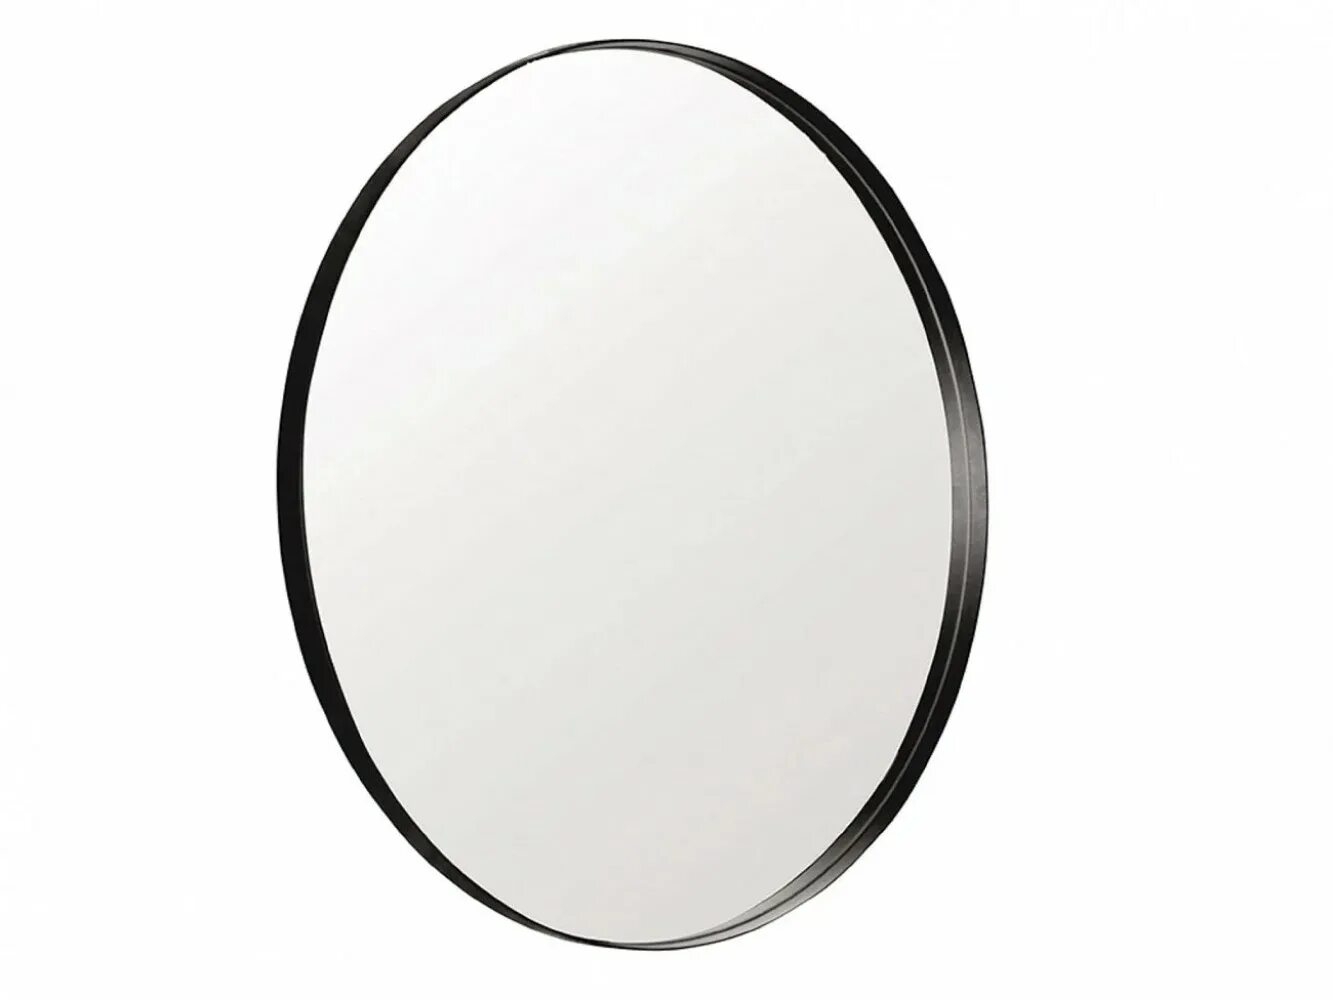 Темное зеркало отзывы. Зеркало Мона 60см. MS-9081-W зеркало настенное, рама цвет орех. Зеркало настенное БЖ 111. Зеркало Colbert Mirror Black 86.